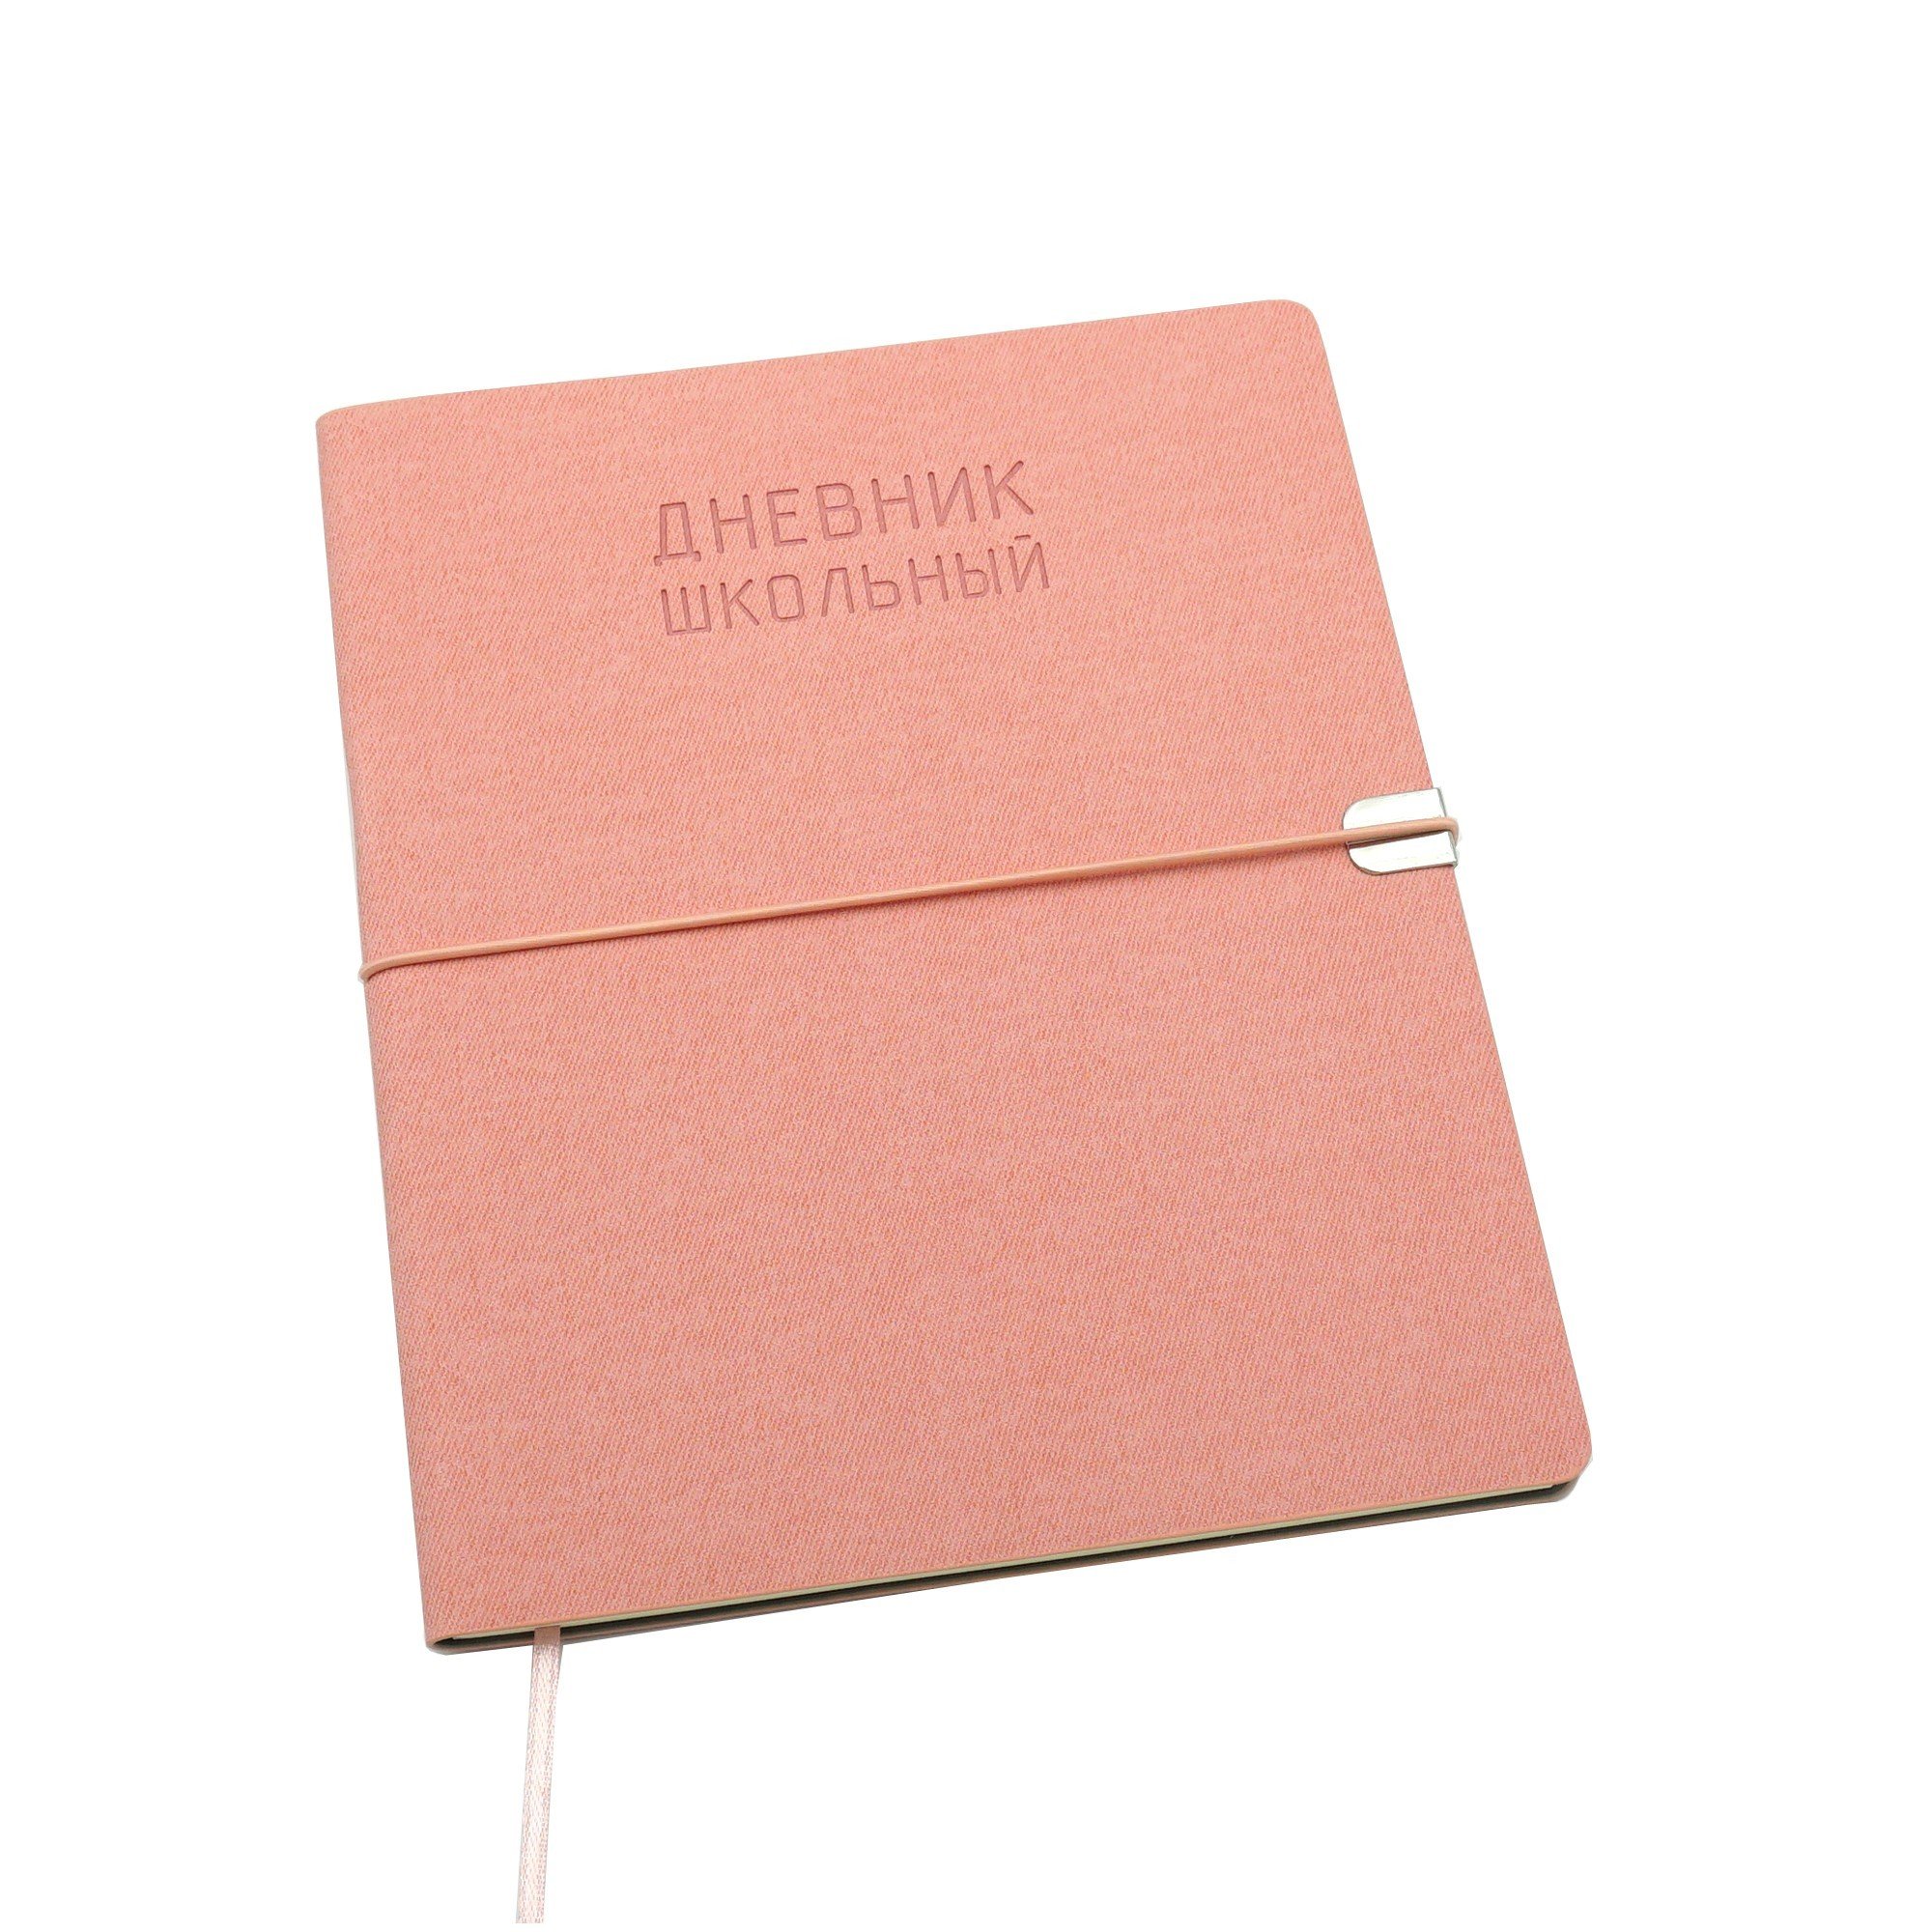 Дневник школьный Original style, 48 листов, розовый